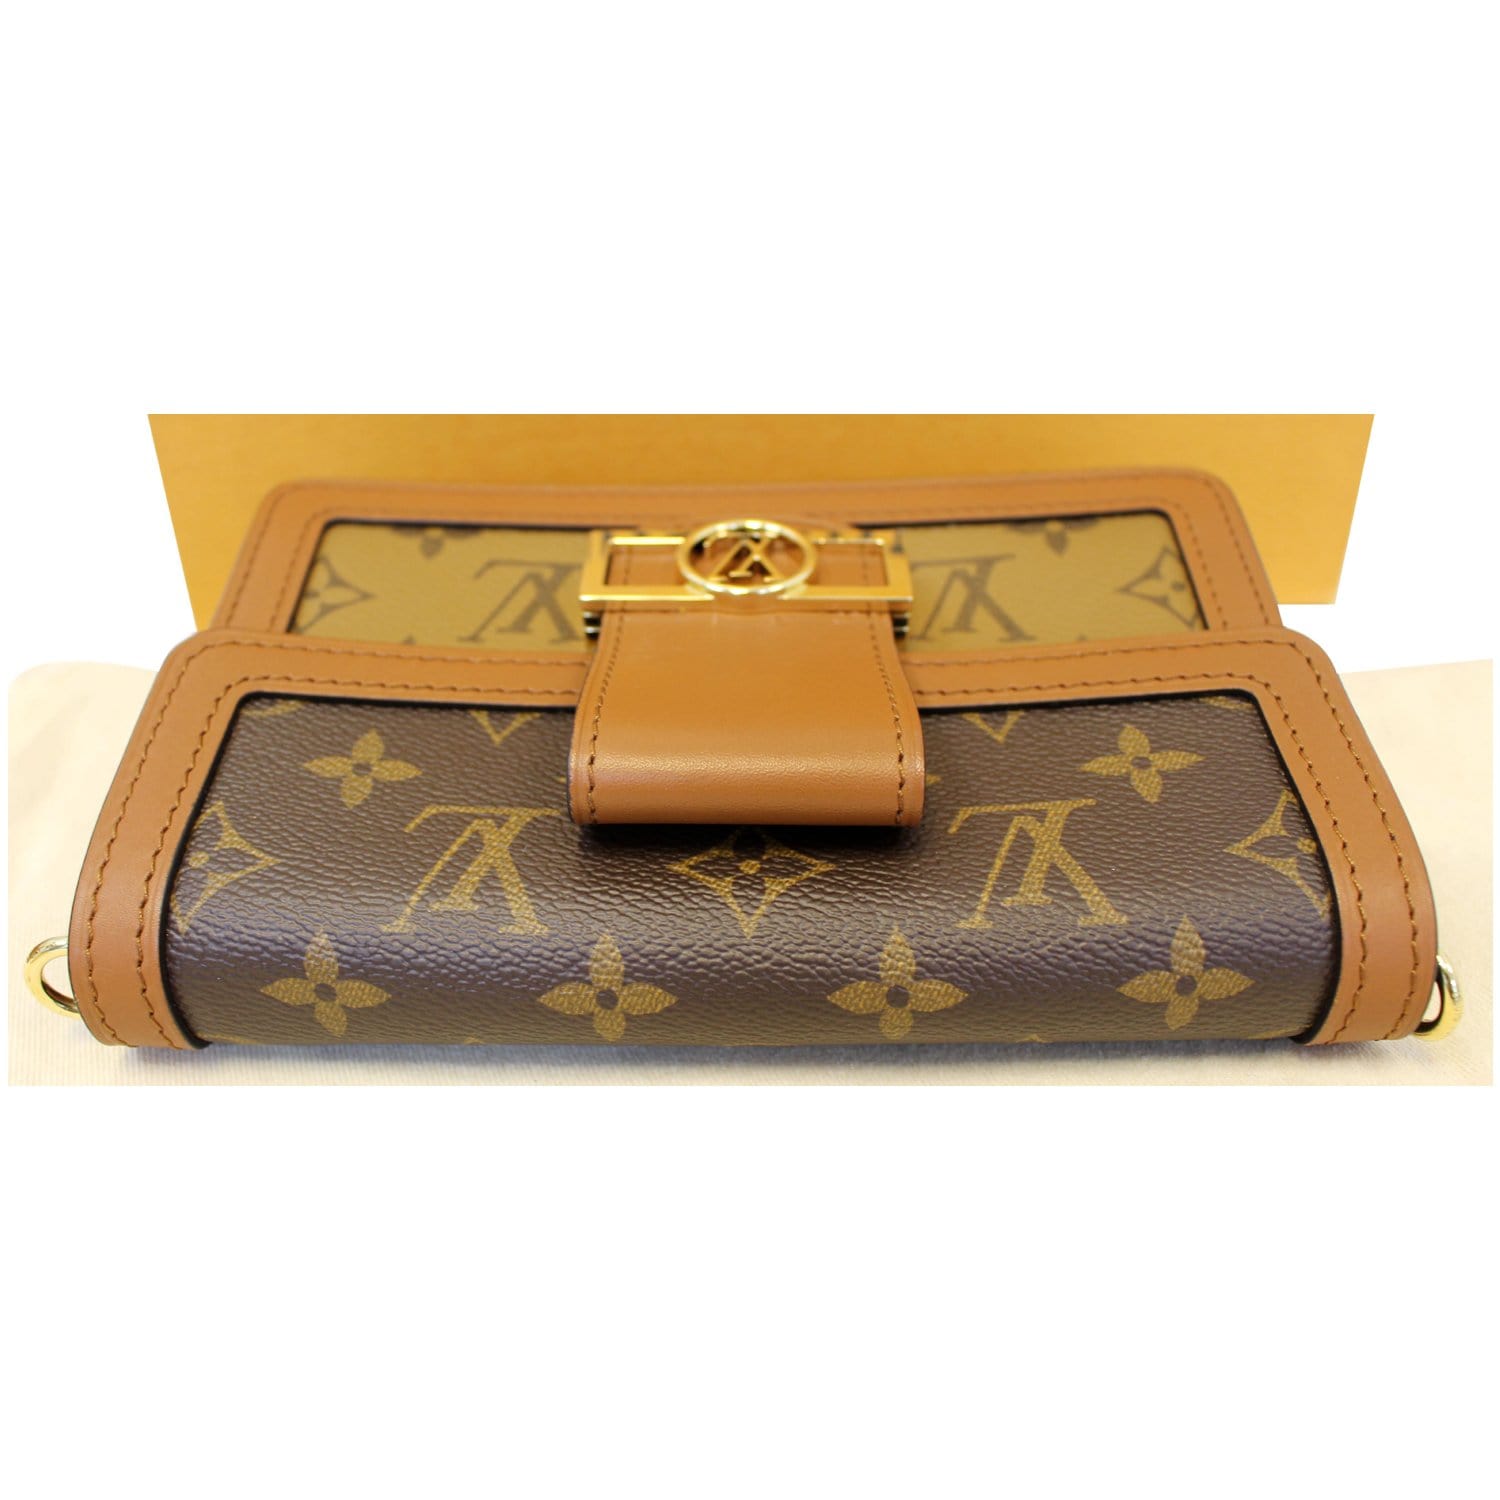 Louis Vuitton Dauphine Compact Canvas Wallet